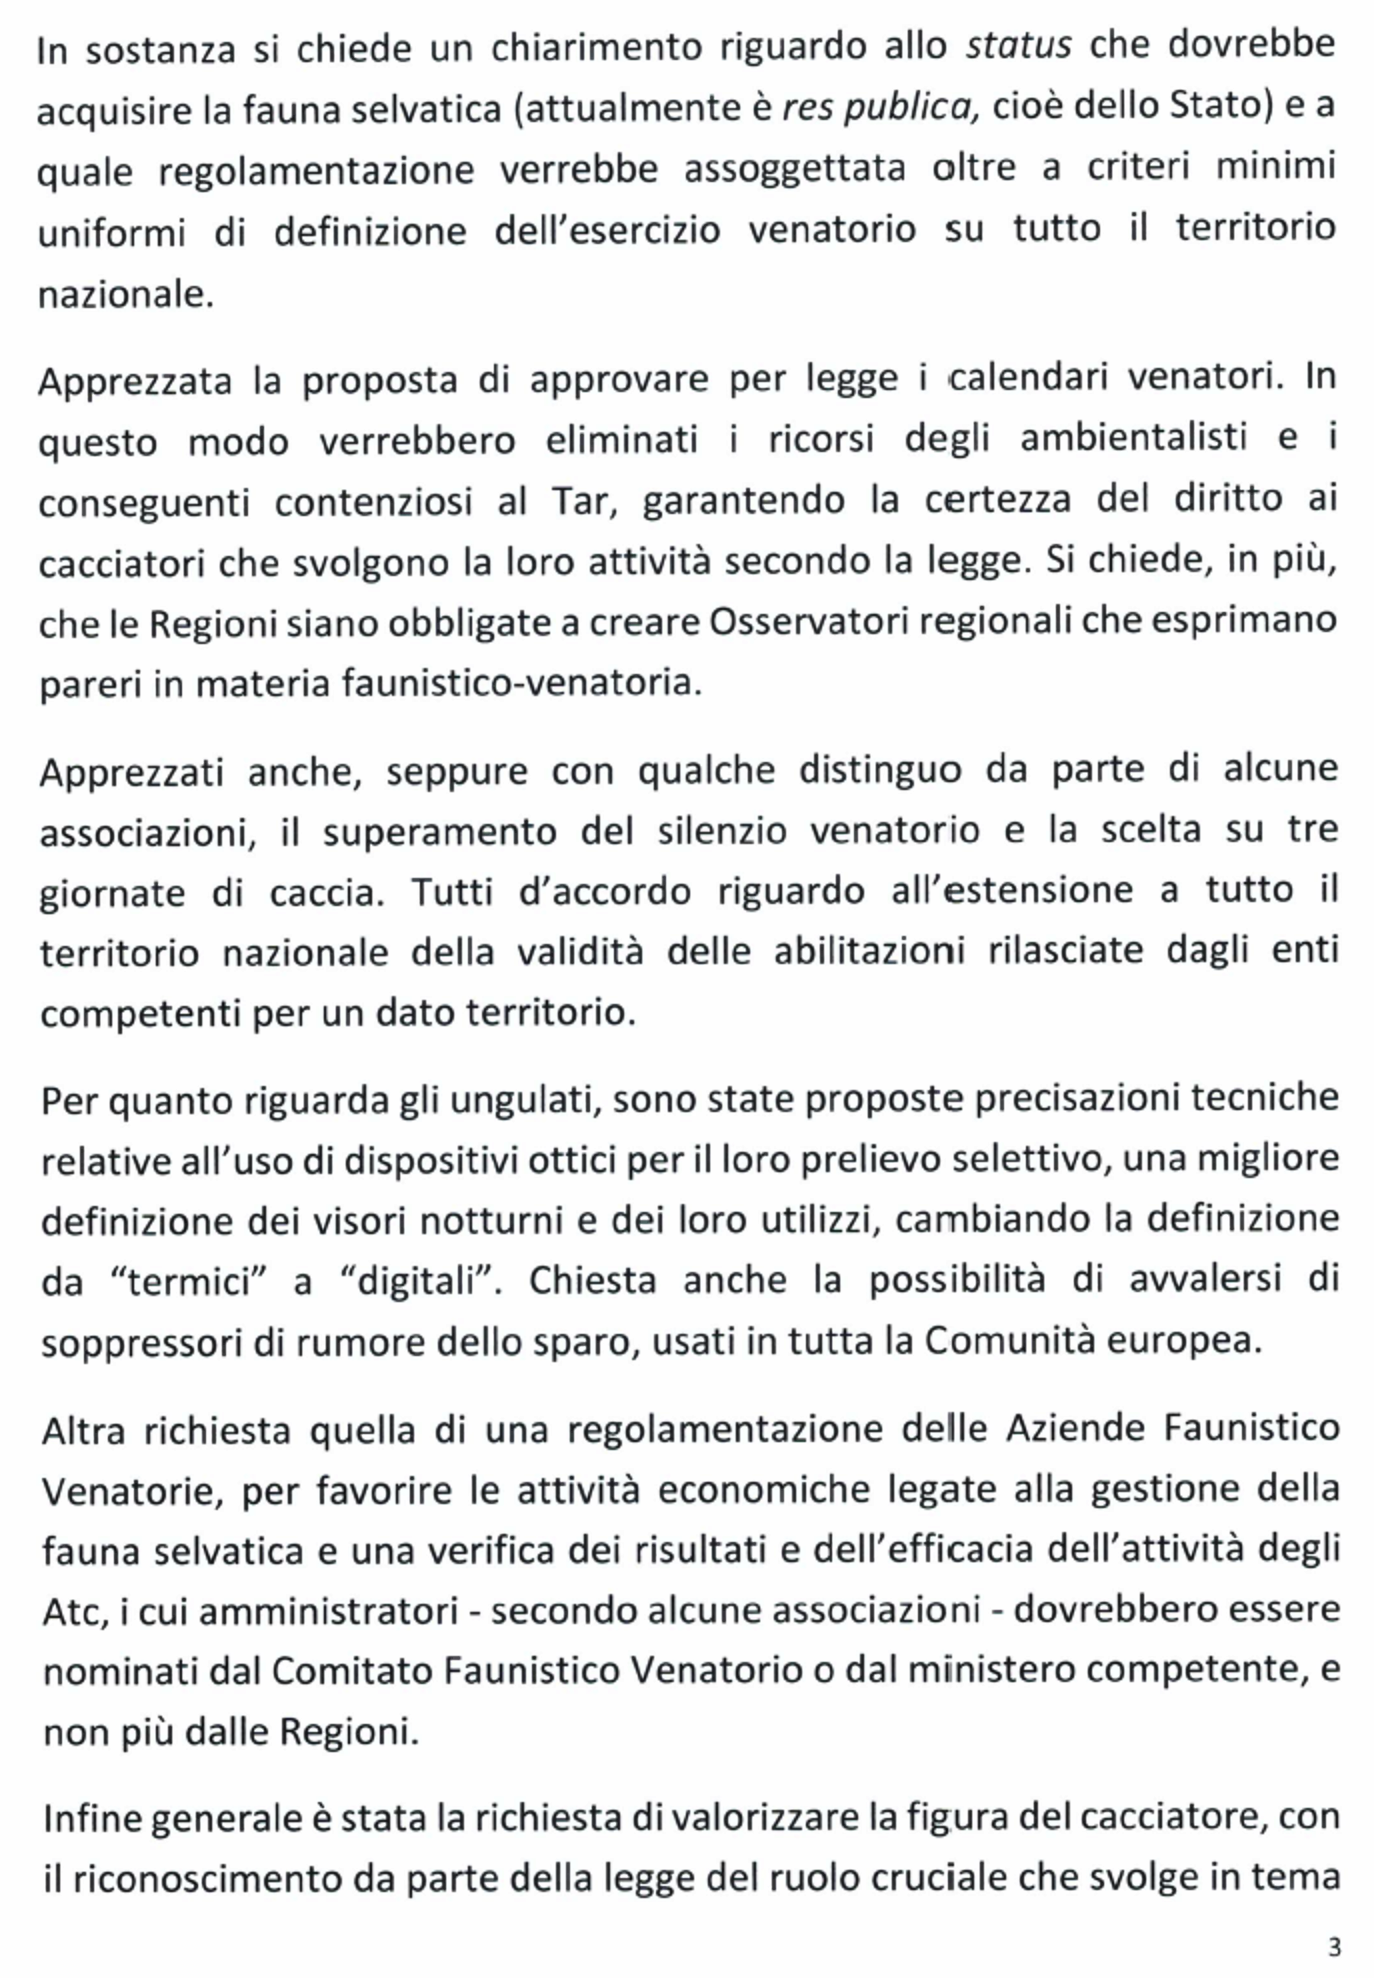 Foglio Notizie Il Becaccino - Nr. 1/2024